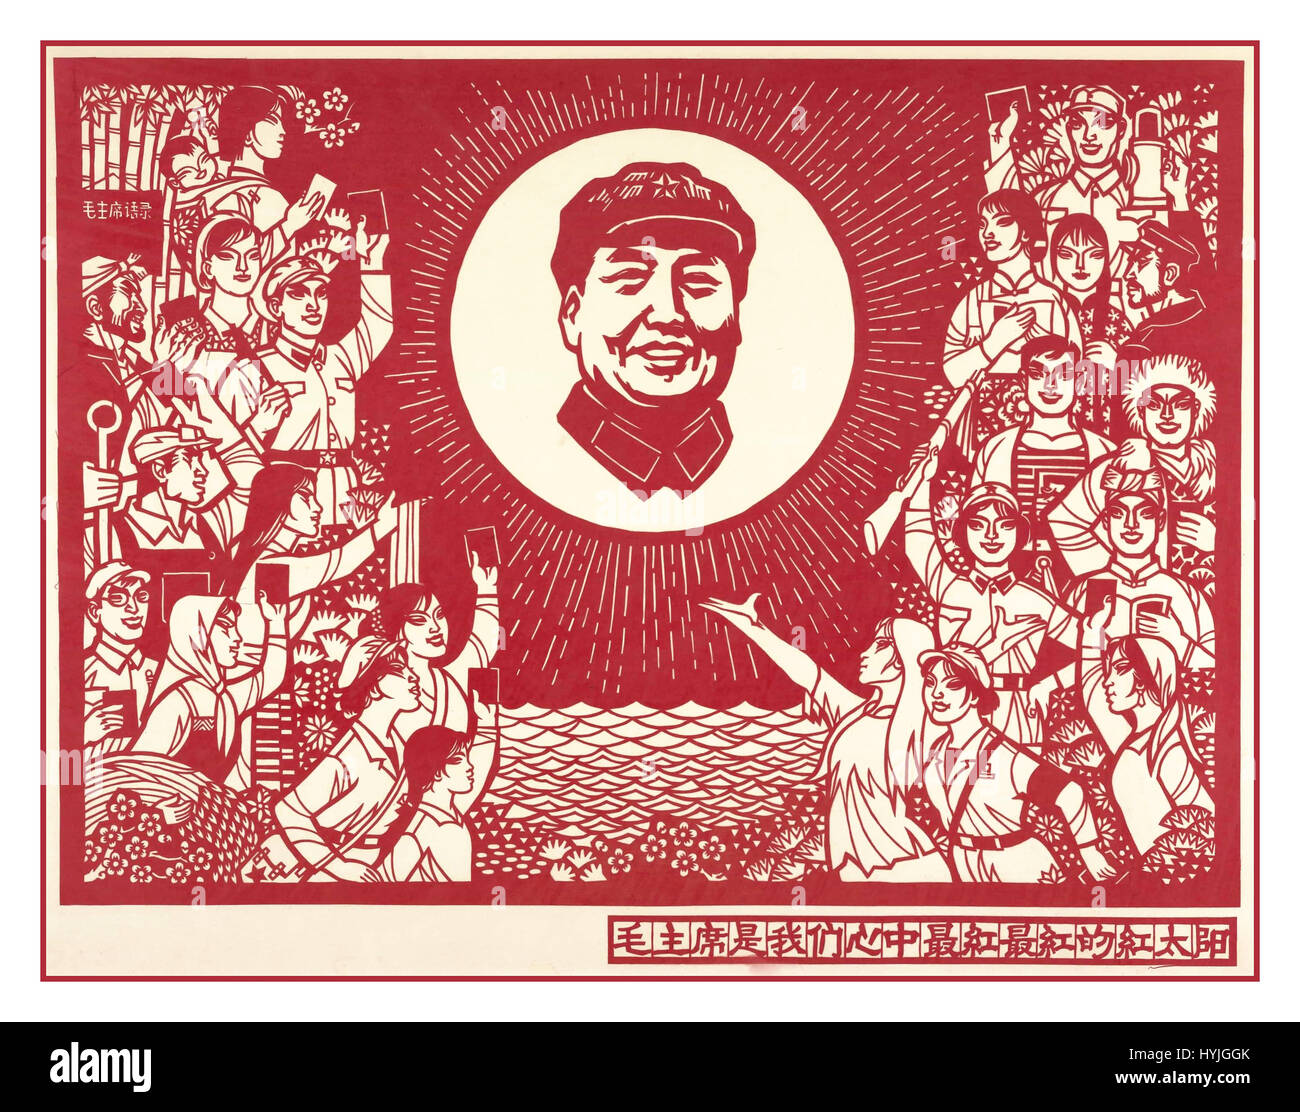 Affiche de propagande chinoise vintage des années 1960 Banque de